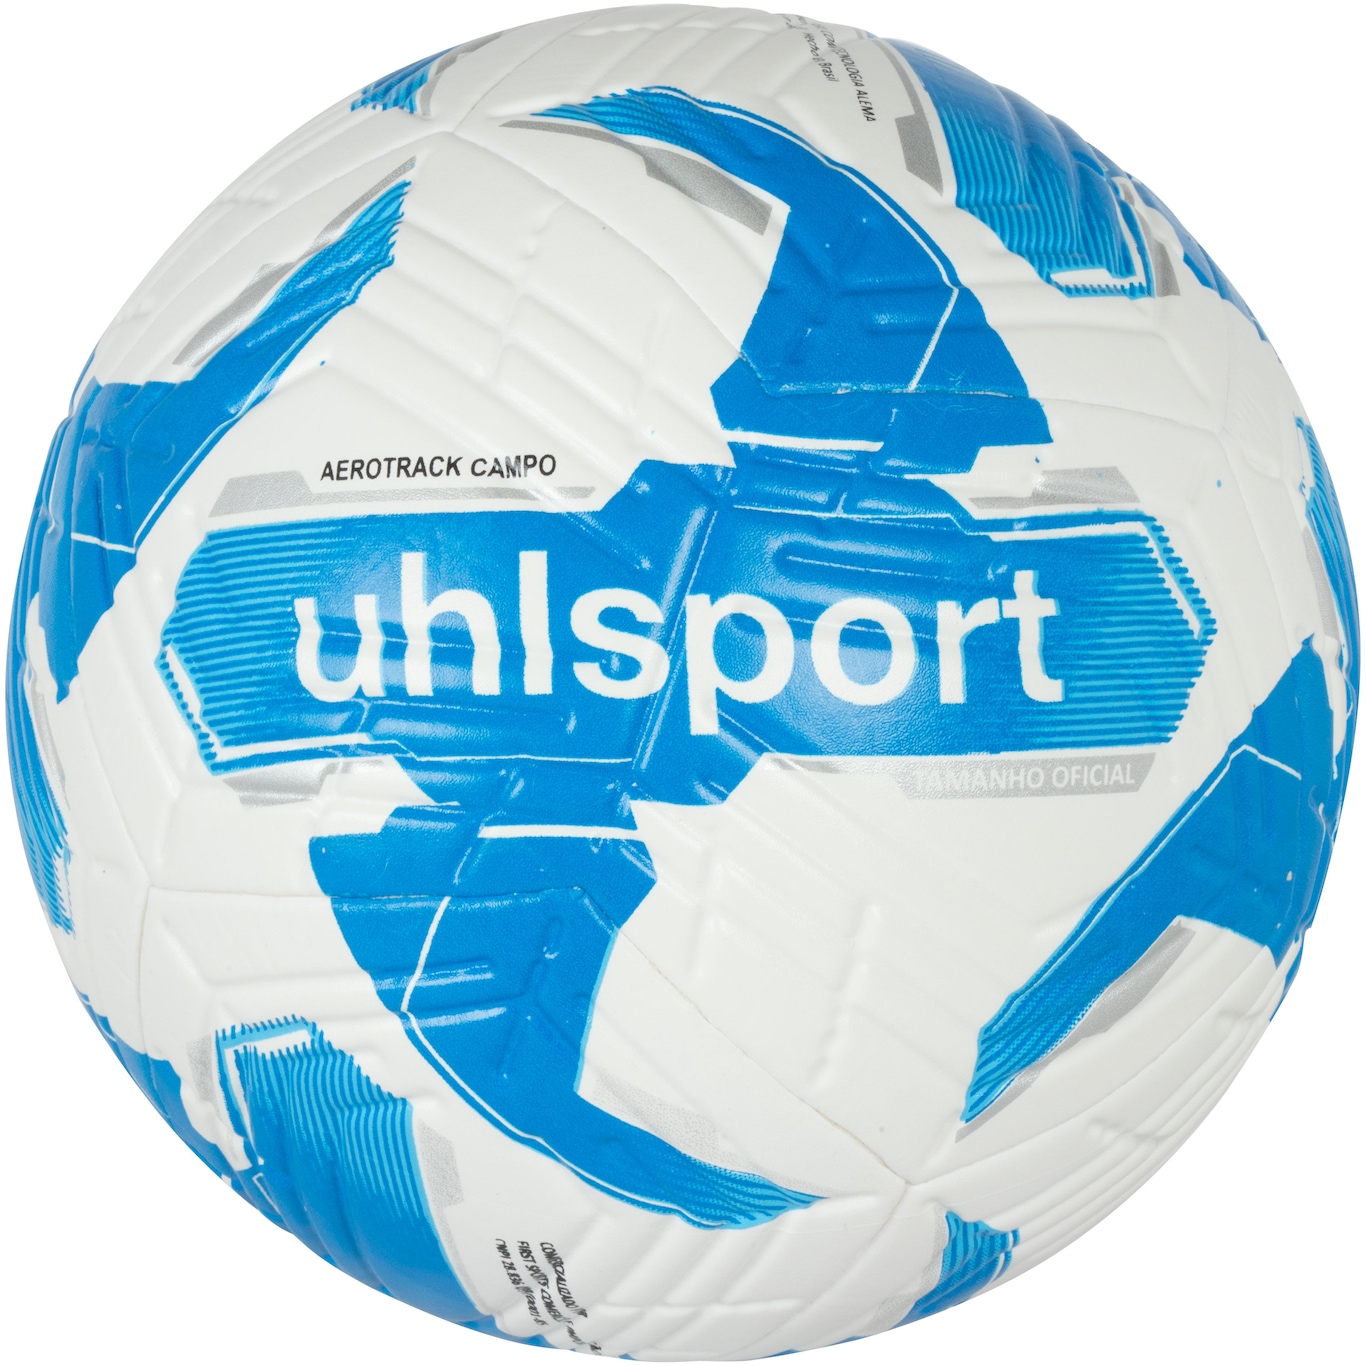 Bola de Futebol de Campo Uhlsport Aerotrack - Foto 1